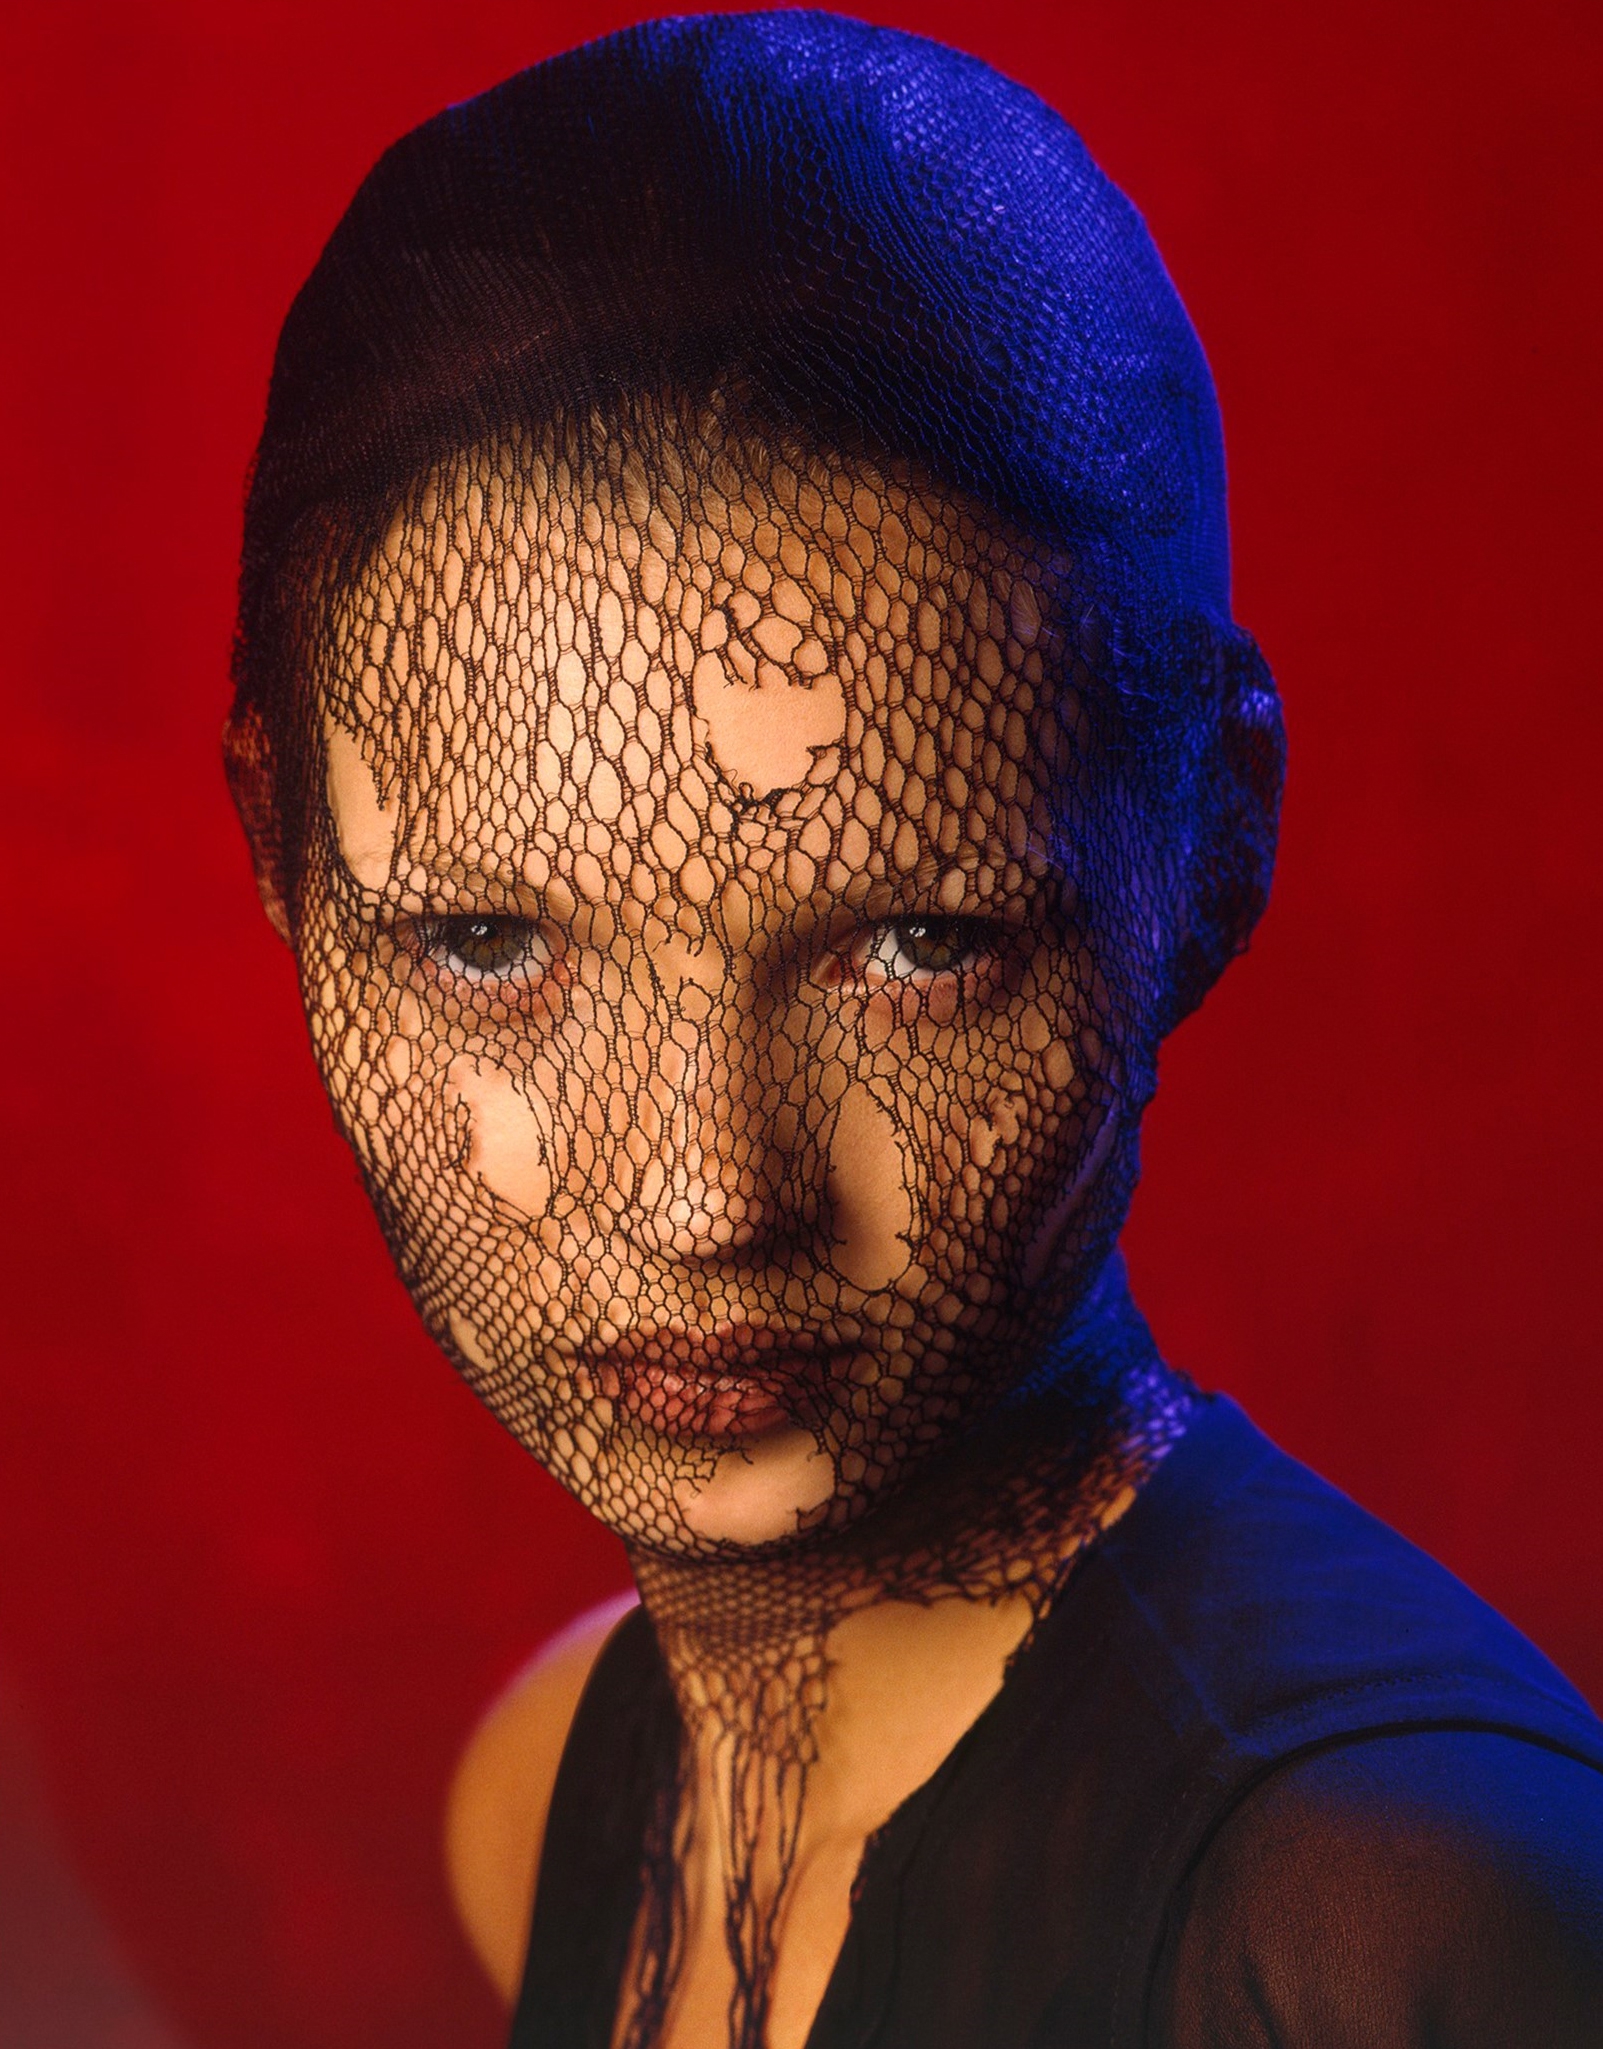 Kate Moss in Torn Veil, Marrakech (from German Vogue) by Albert Watson ...